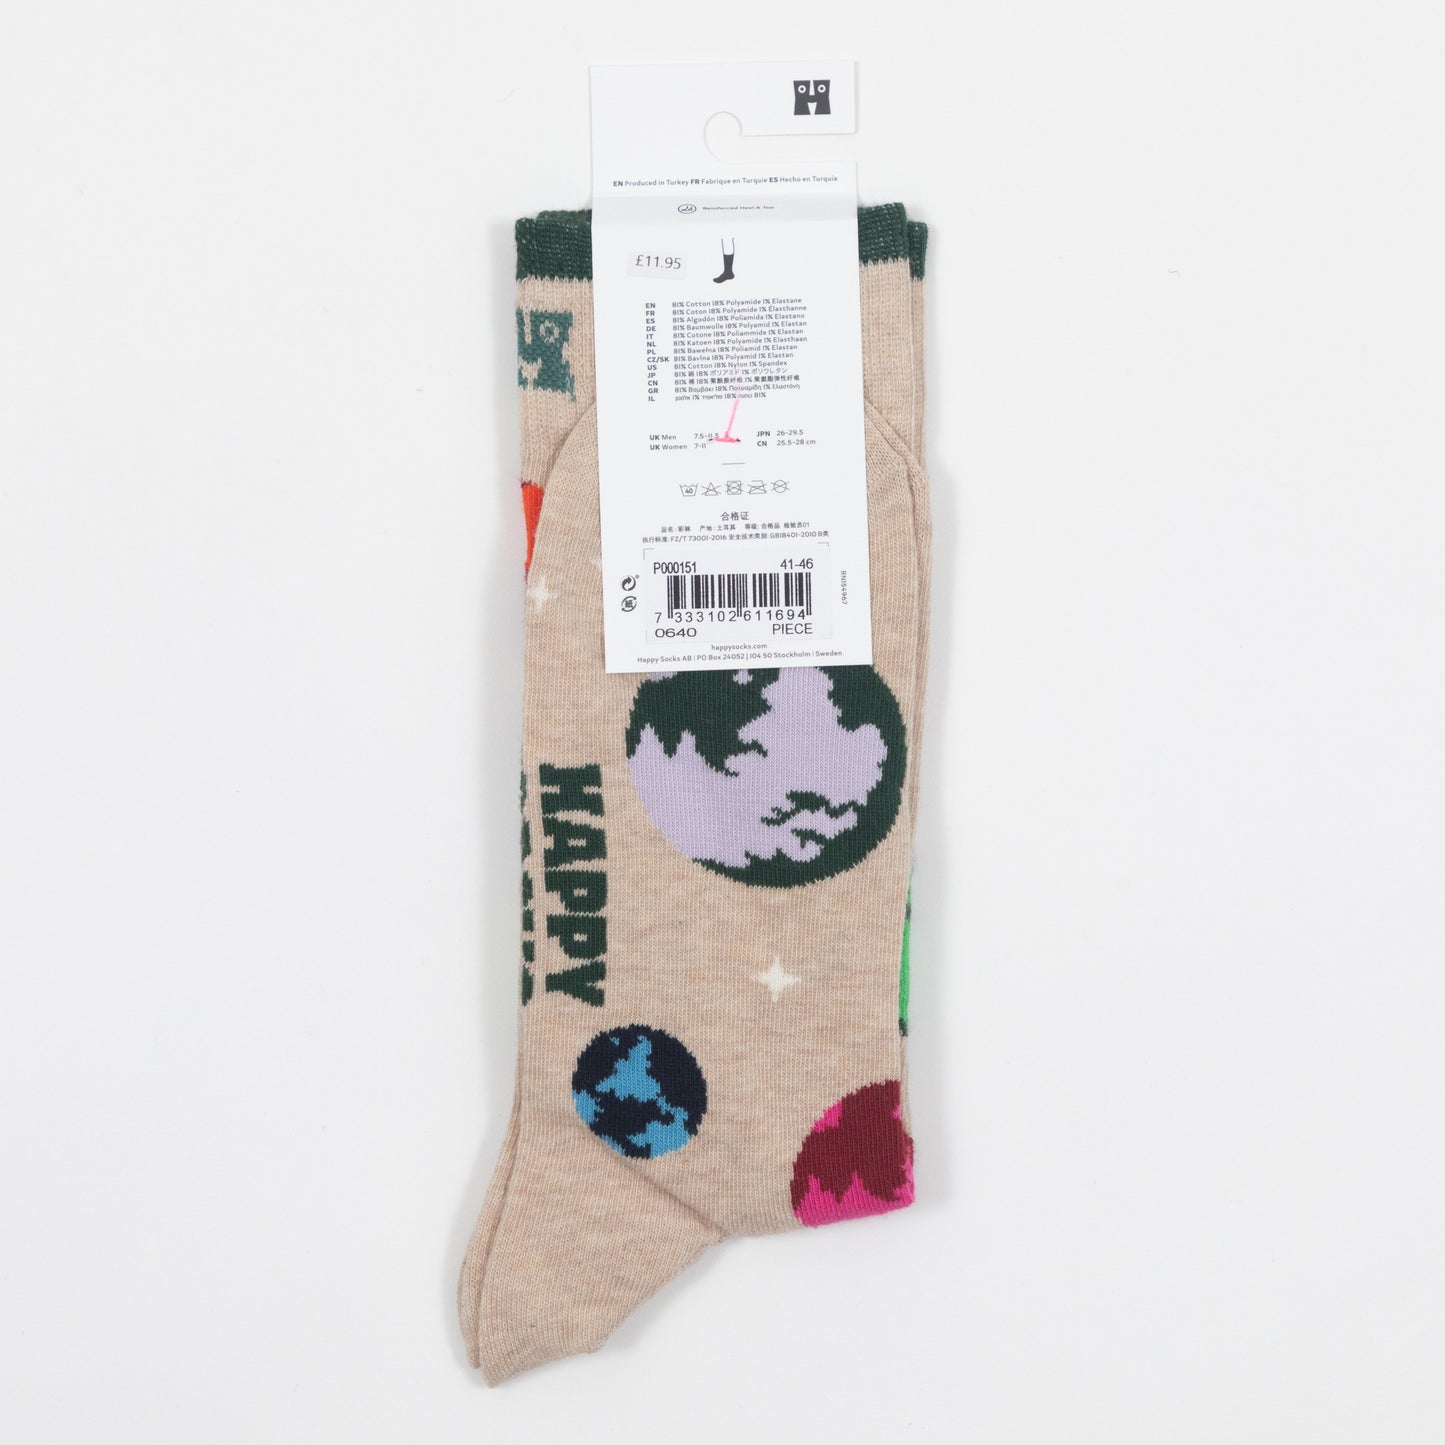 HAPPY SOCKS Planet Earth Socks in GREY